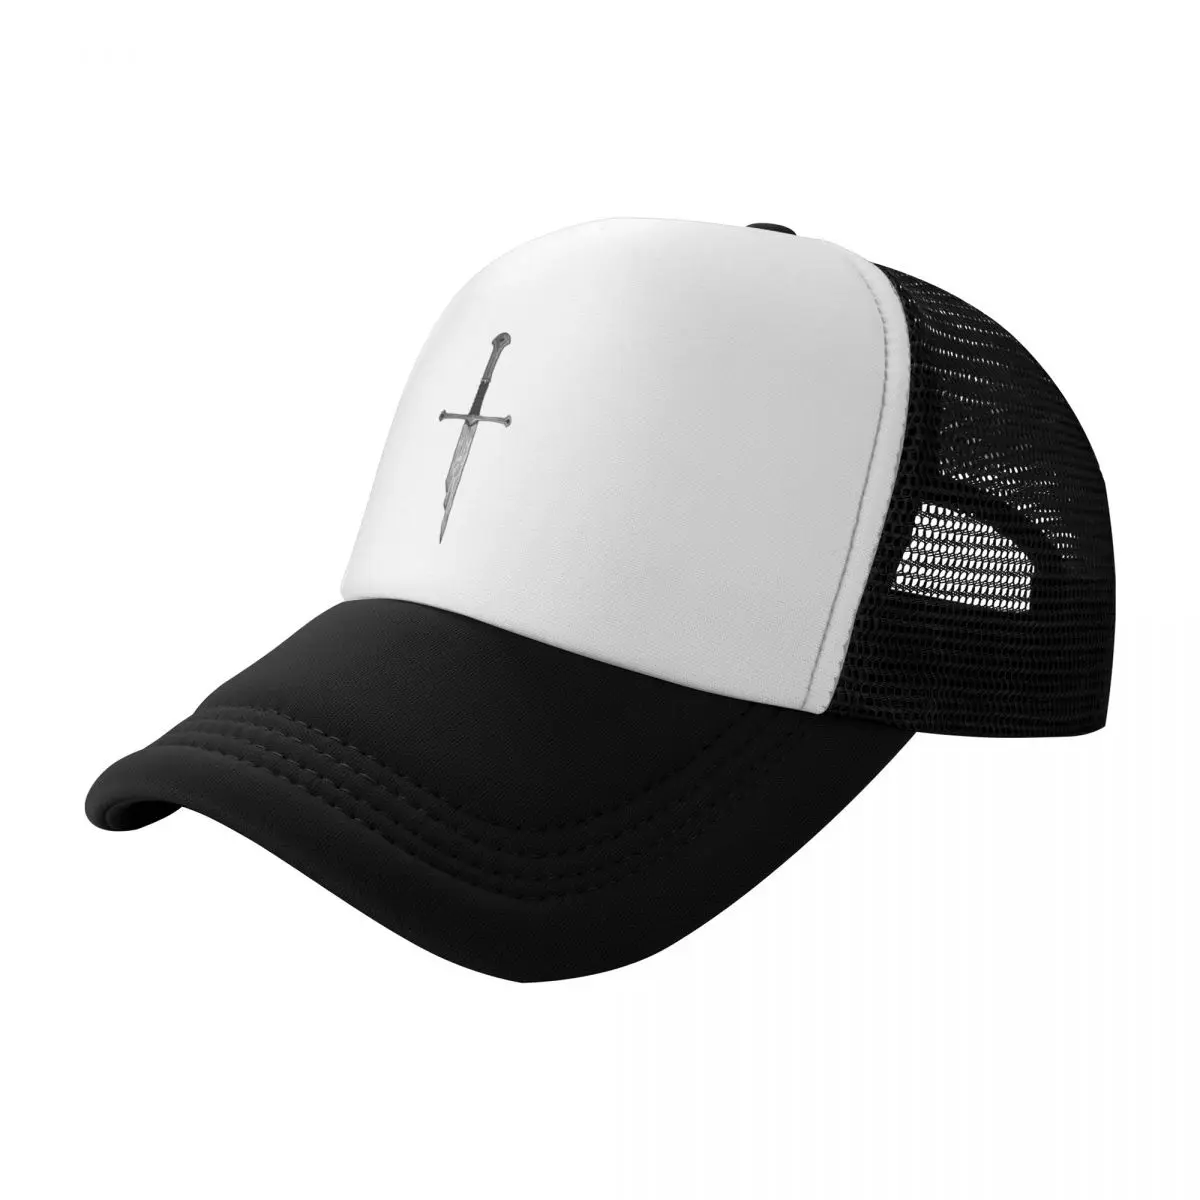 

The Broken Sword Baseball Cap black Uv Protection Solar Hat For Women Men's